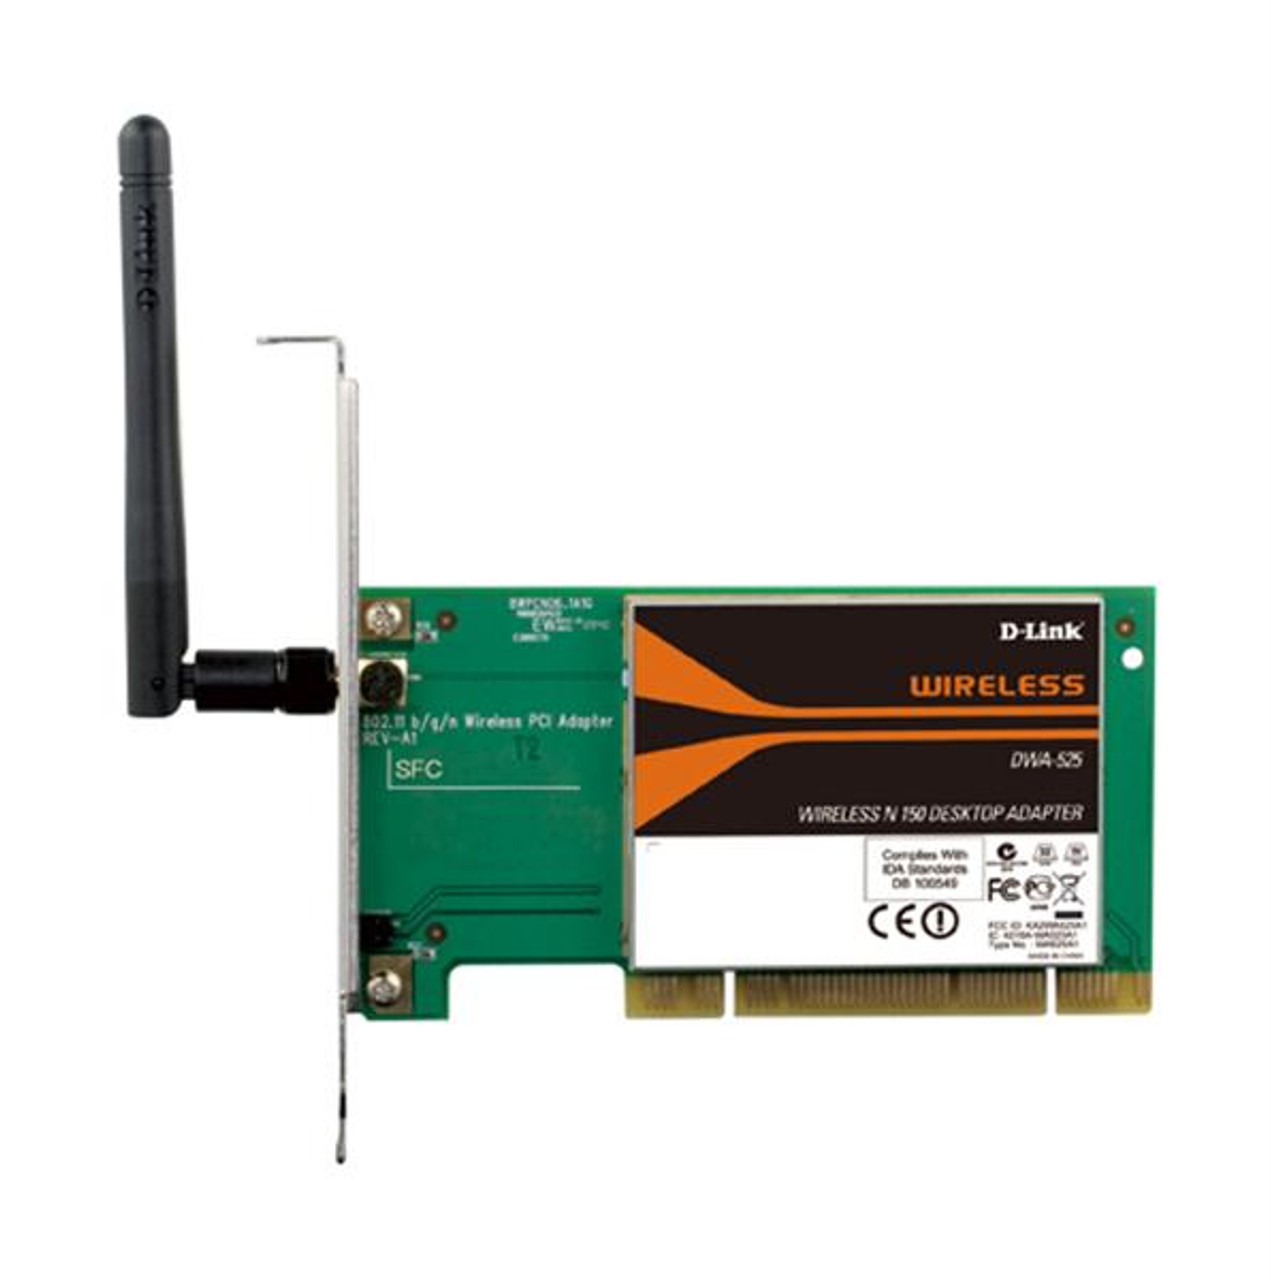 DWA-525 D-Link Wireless N 802.11n 150 Desktop PCI Network Adapter